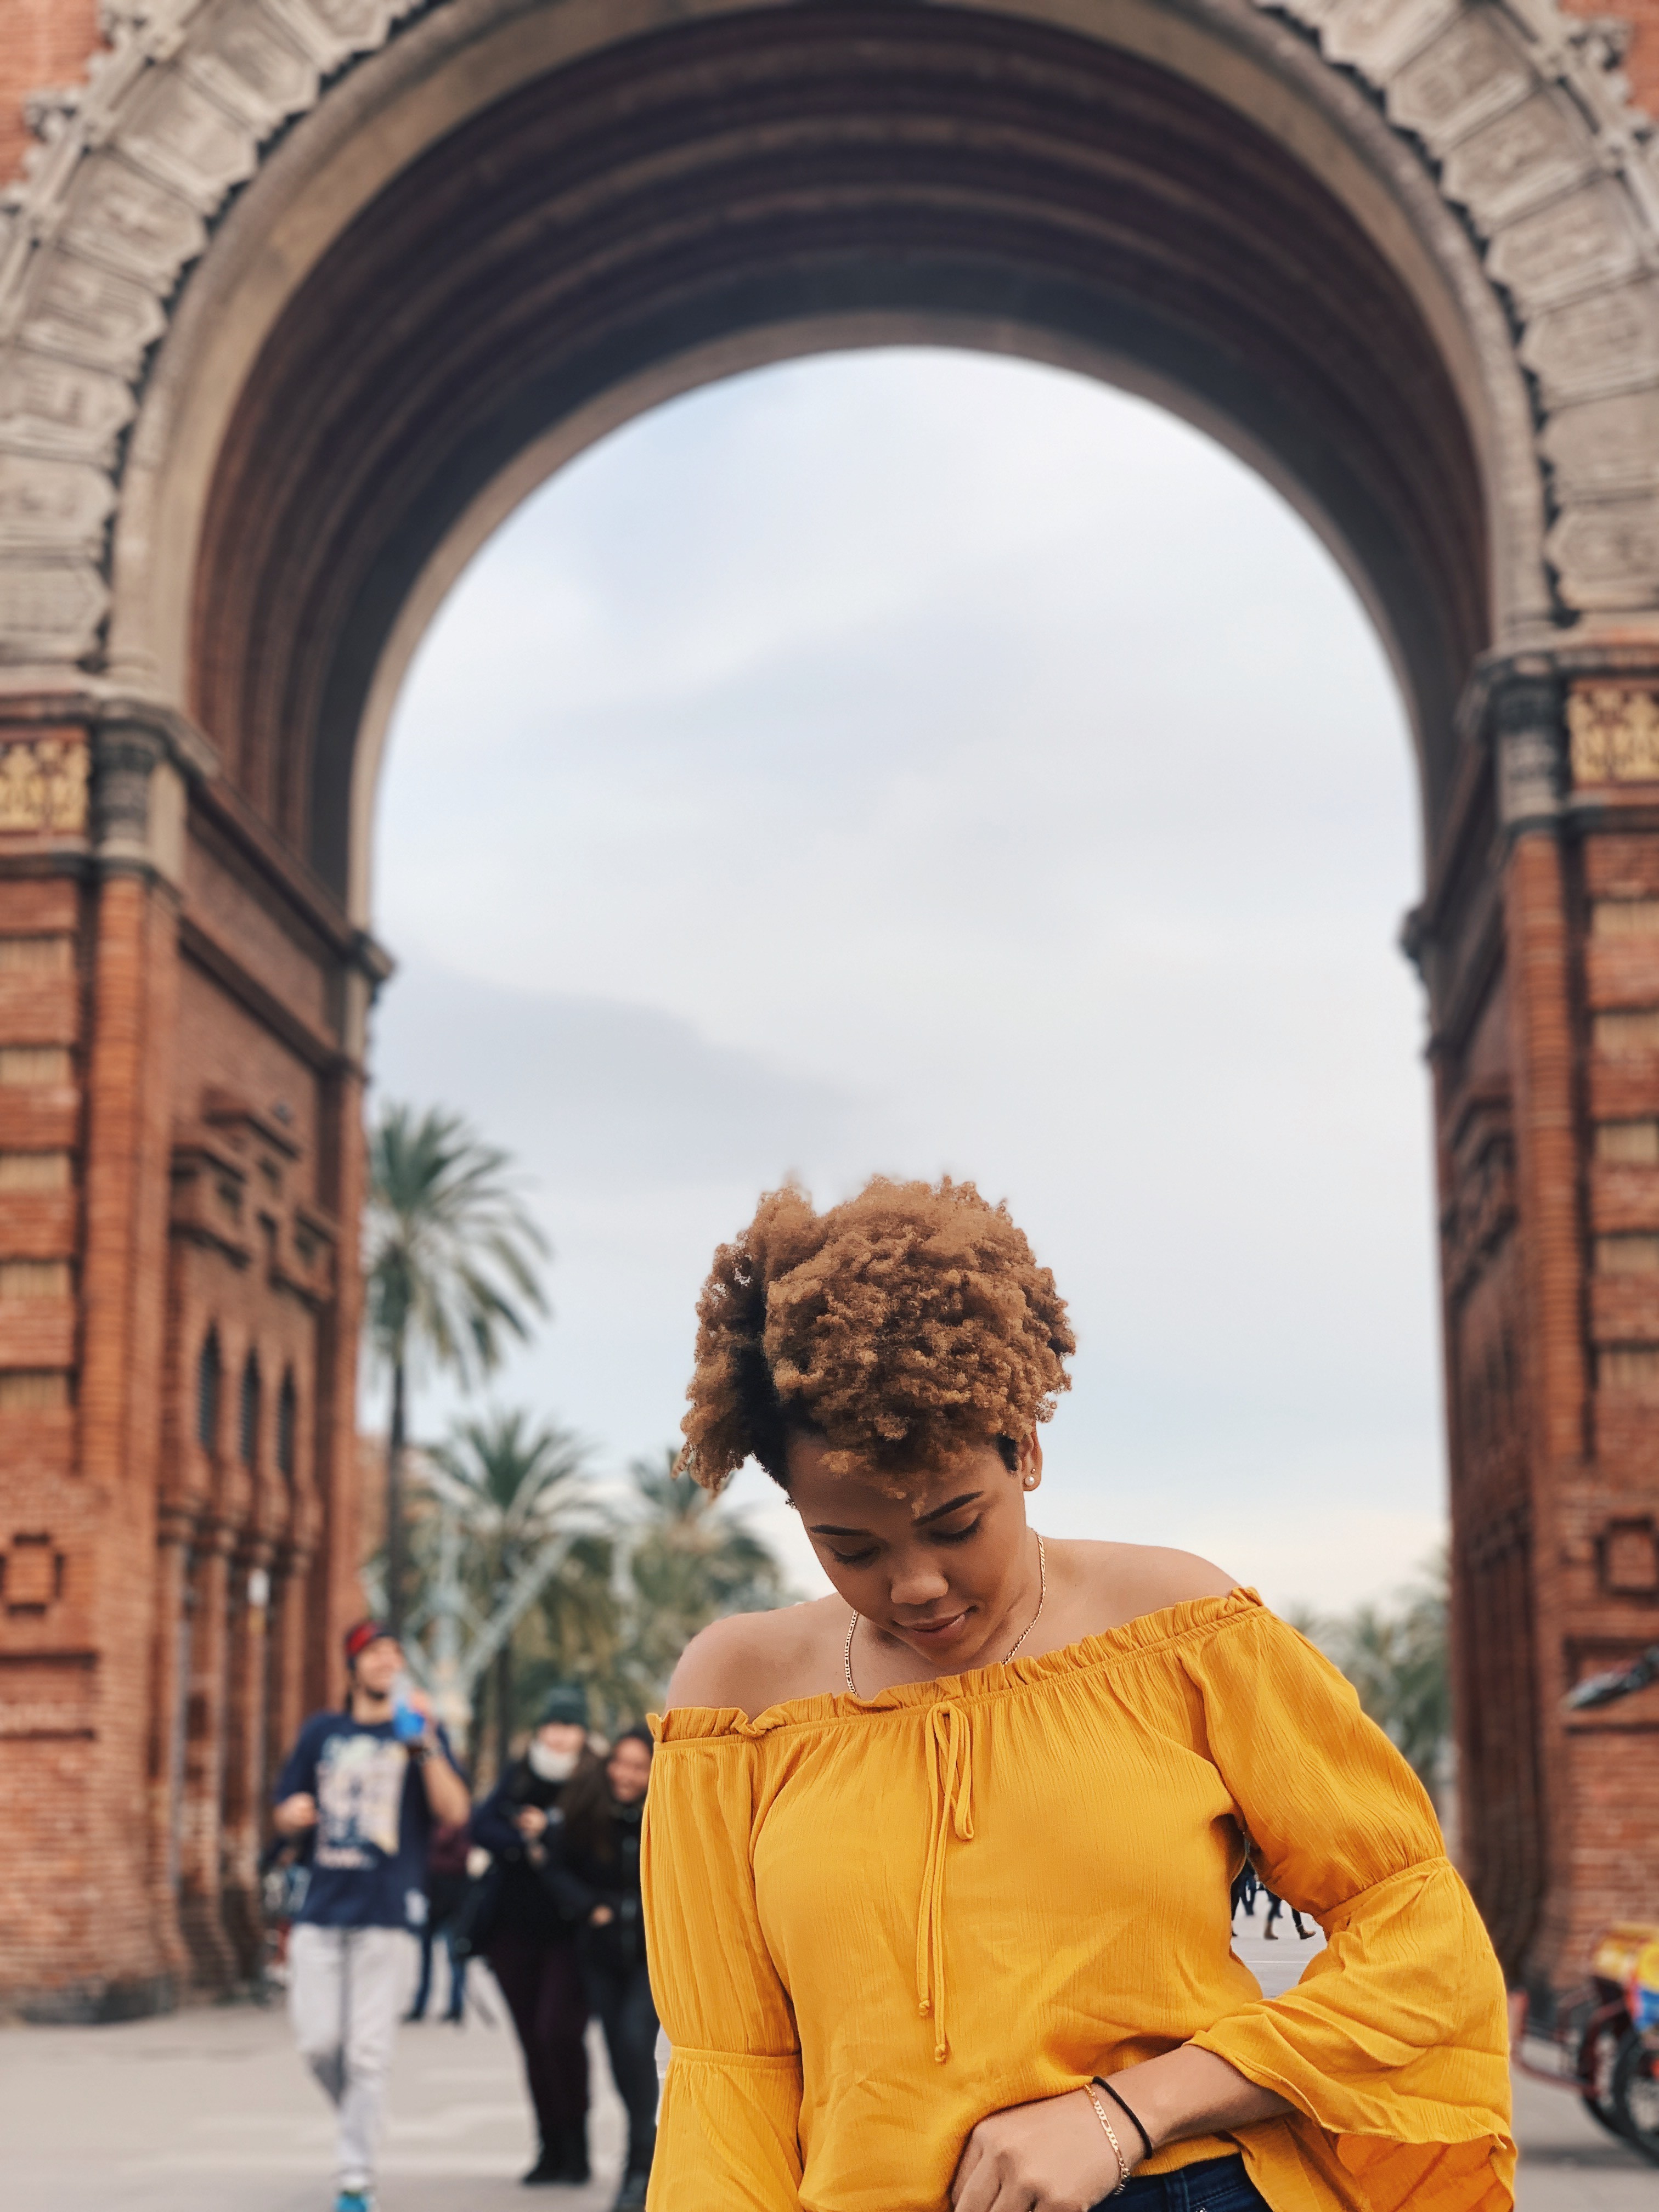 Luzmia Ligonde poses in front of La Sagrada Familia attraction